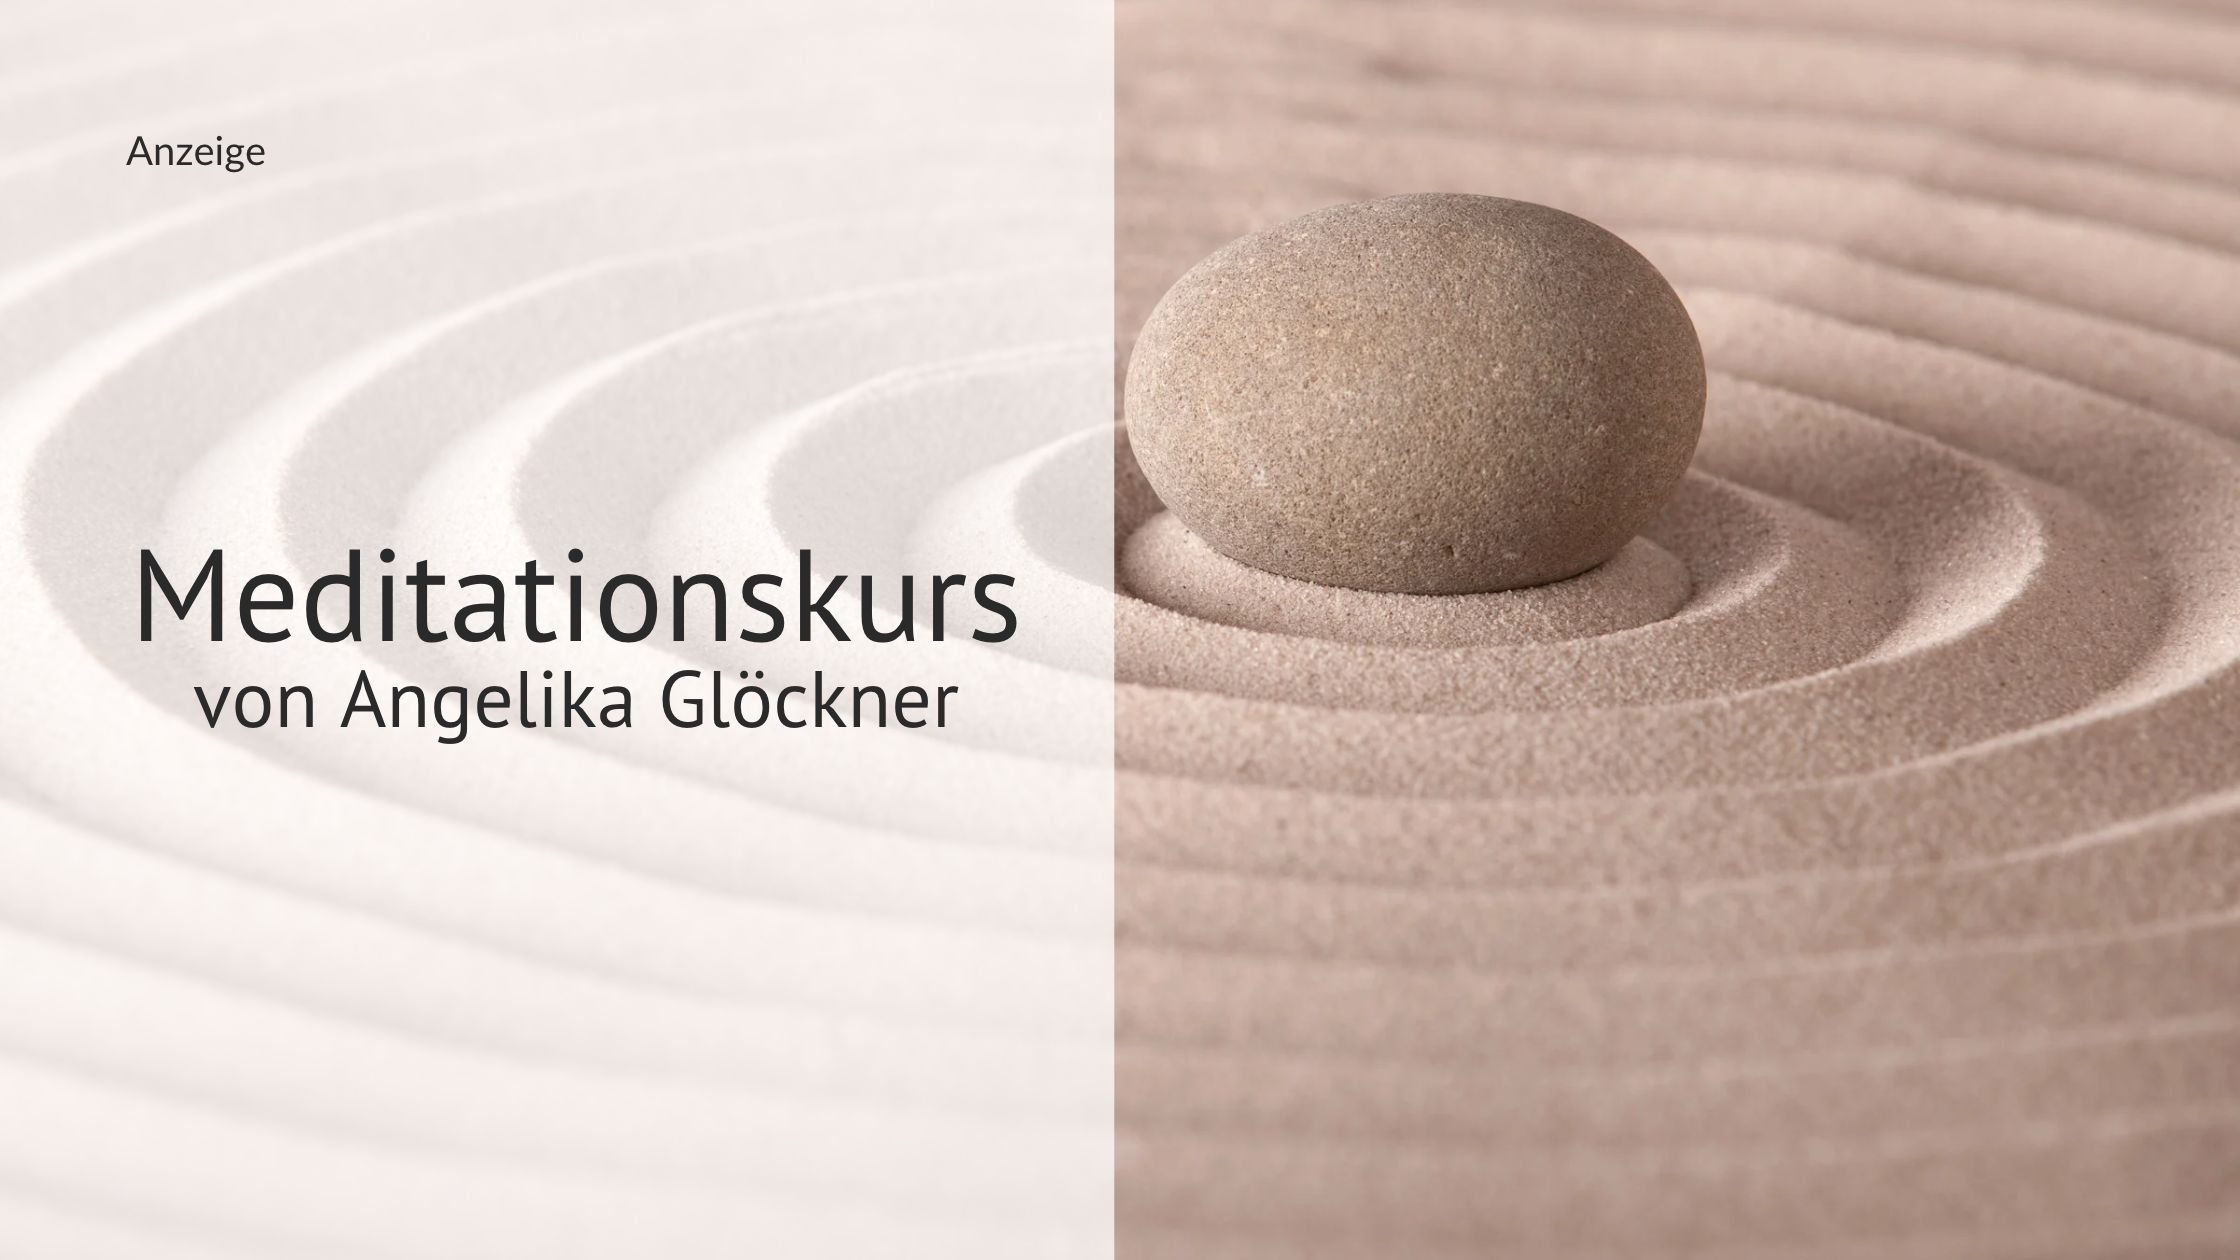 Anzeige: Meditationskurs mit Angelika Glöckner